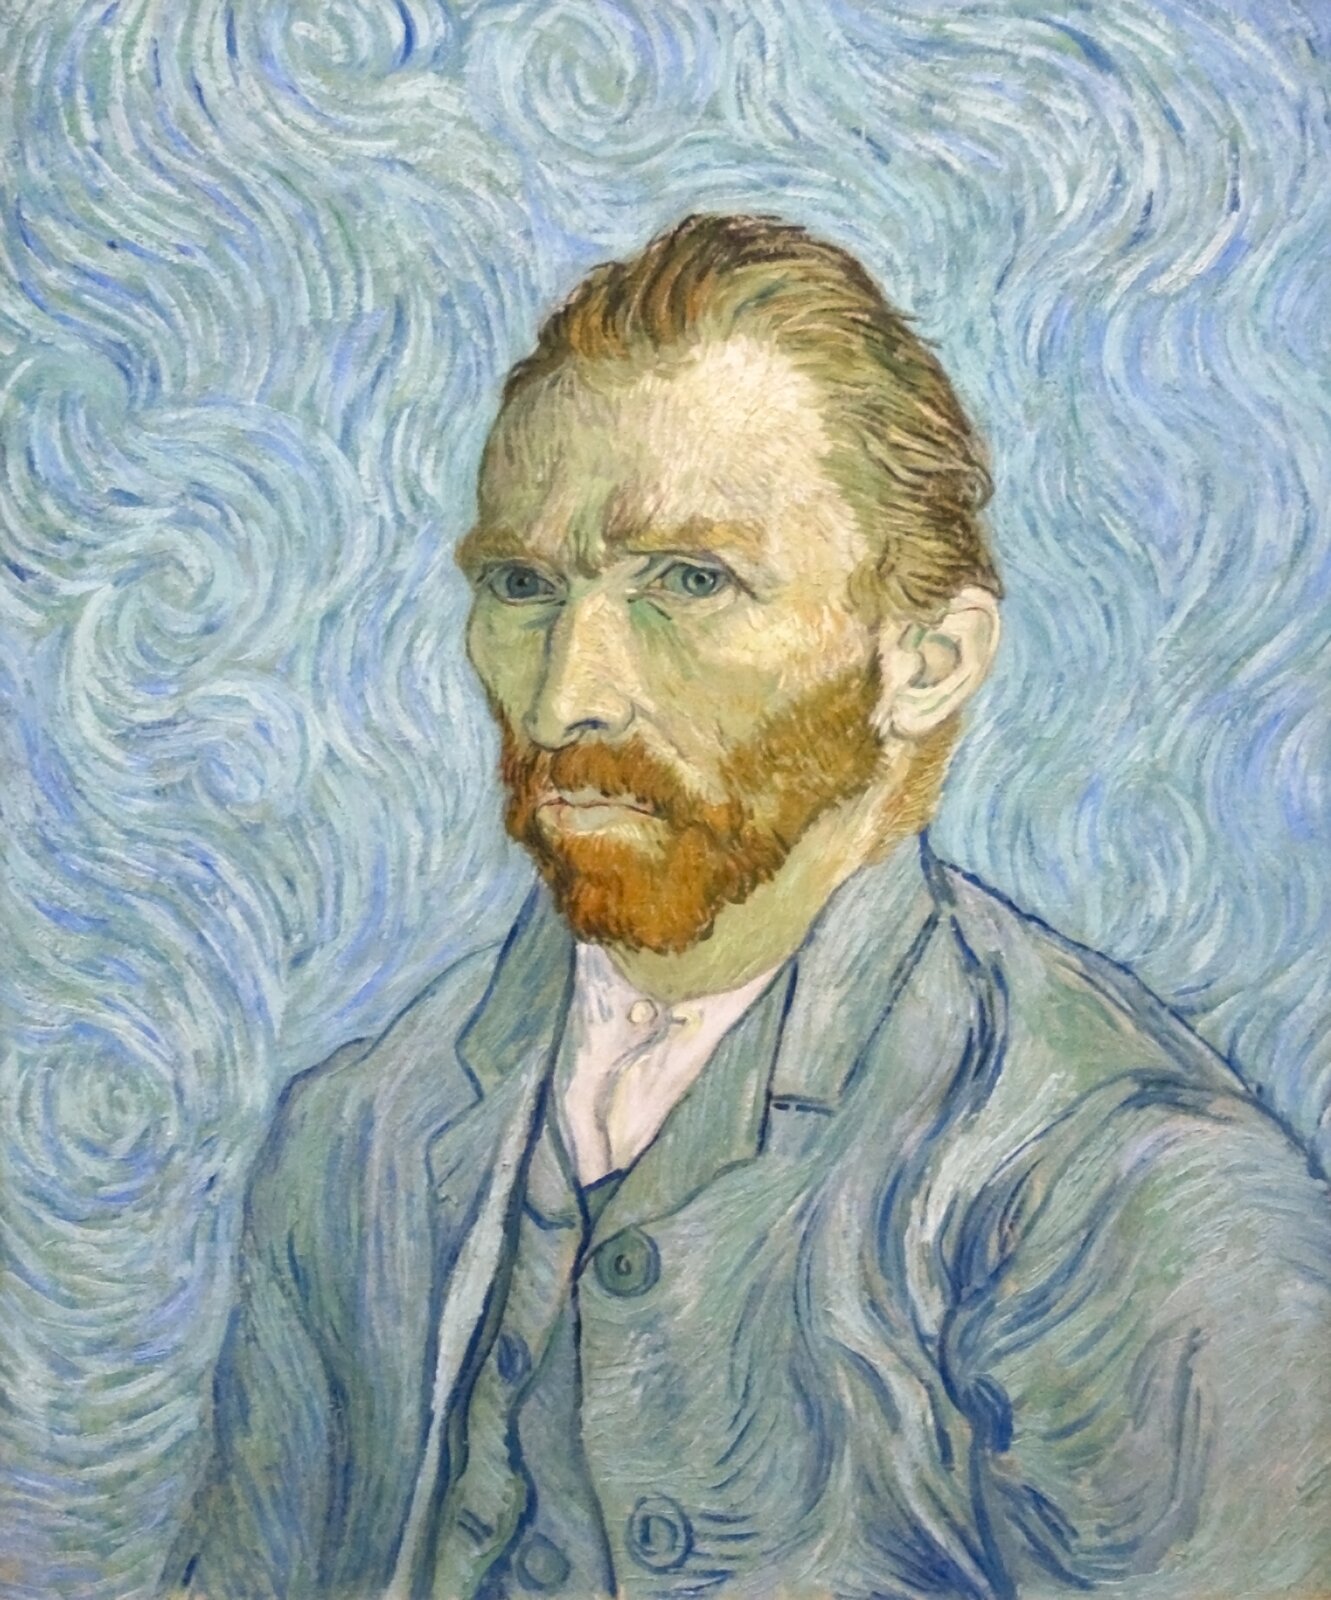 Vincent van Gogh, Autoportret, 1889 Źródło: Szilas, Vincent van Gogh, Autoportret, 1889, olej na płótnie, Musée d’Orsay, Paryż, licencja: CC 0.